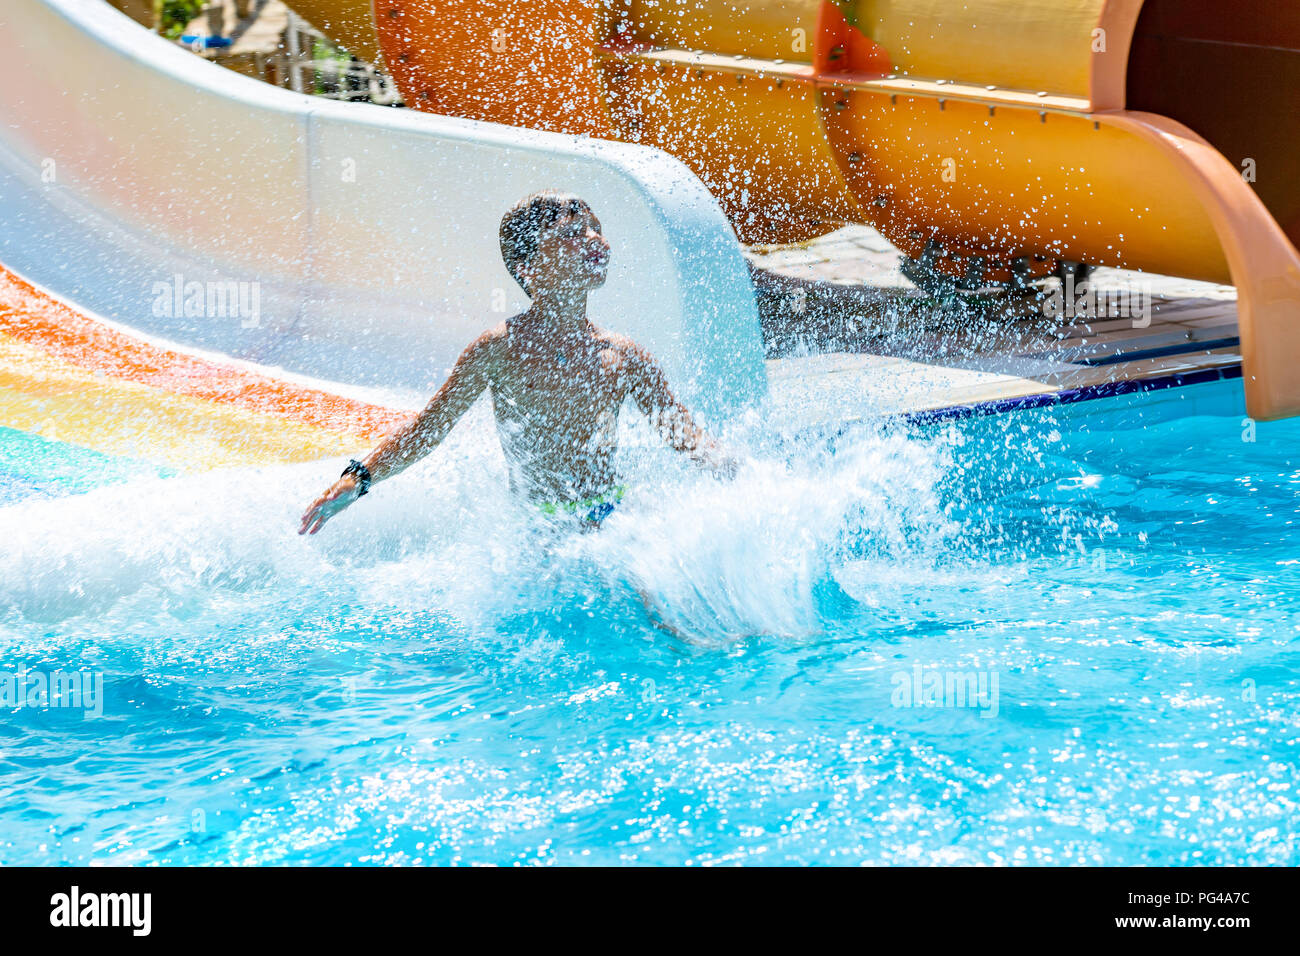 Eine glückliche junge auf Wasserrutsche in einem Schwimmbad Spaß im Sommer Urlaub in einer schönen Aqua Park. Ein Junge nach unten kriechend auf der Wasserrutsche und spritzt. Stockfoto